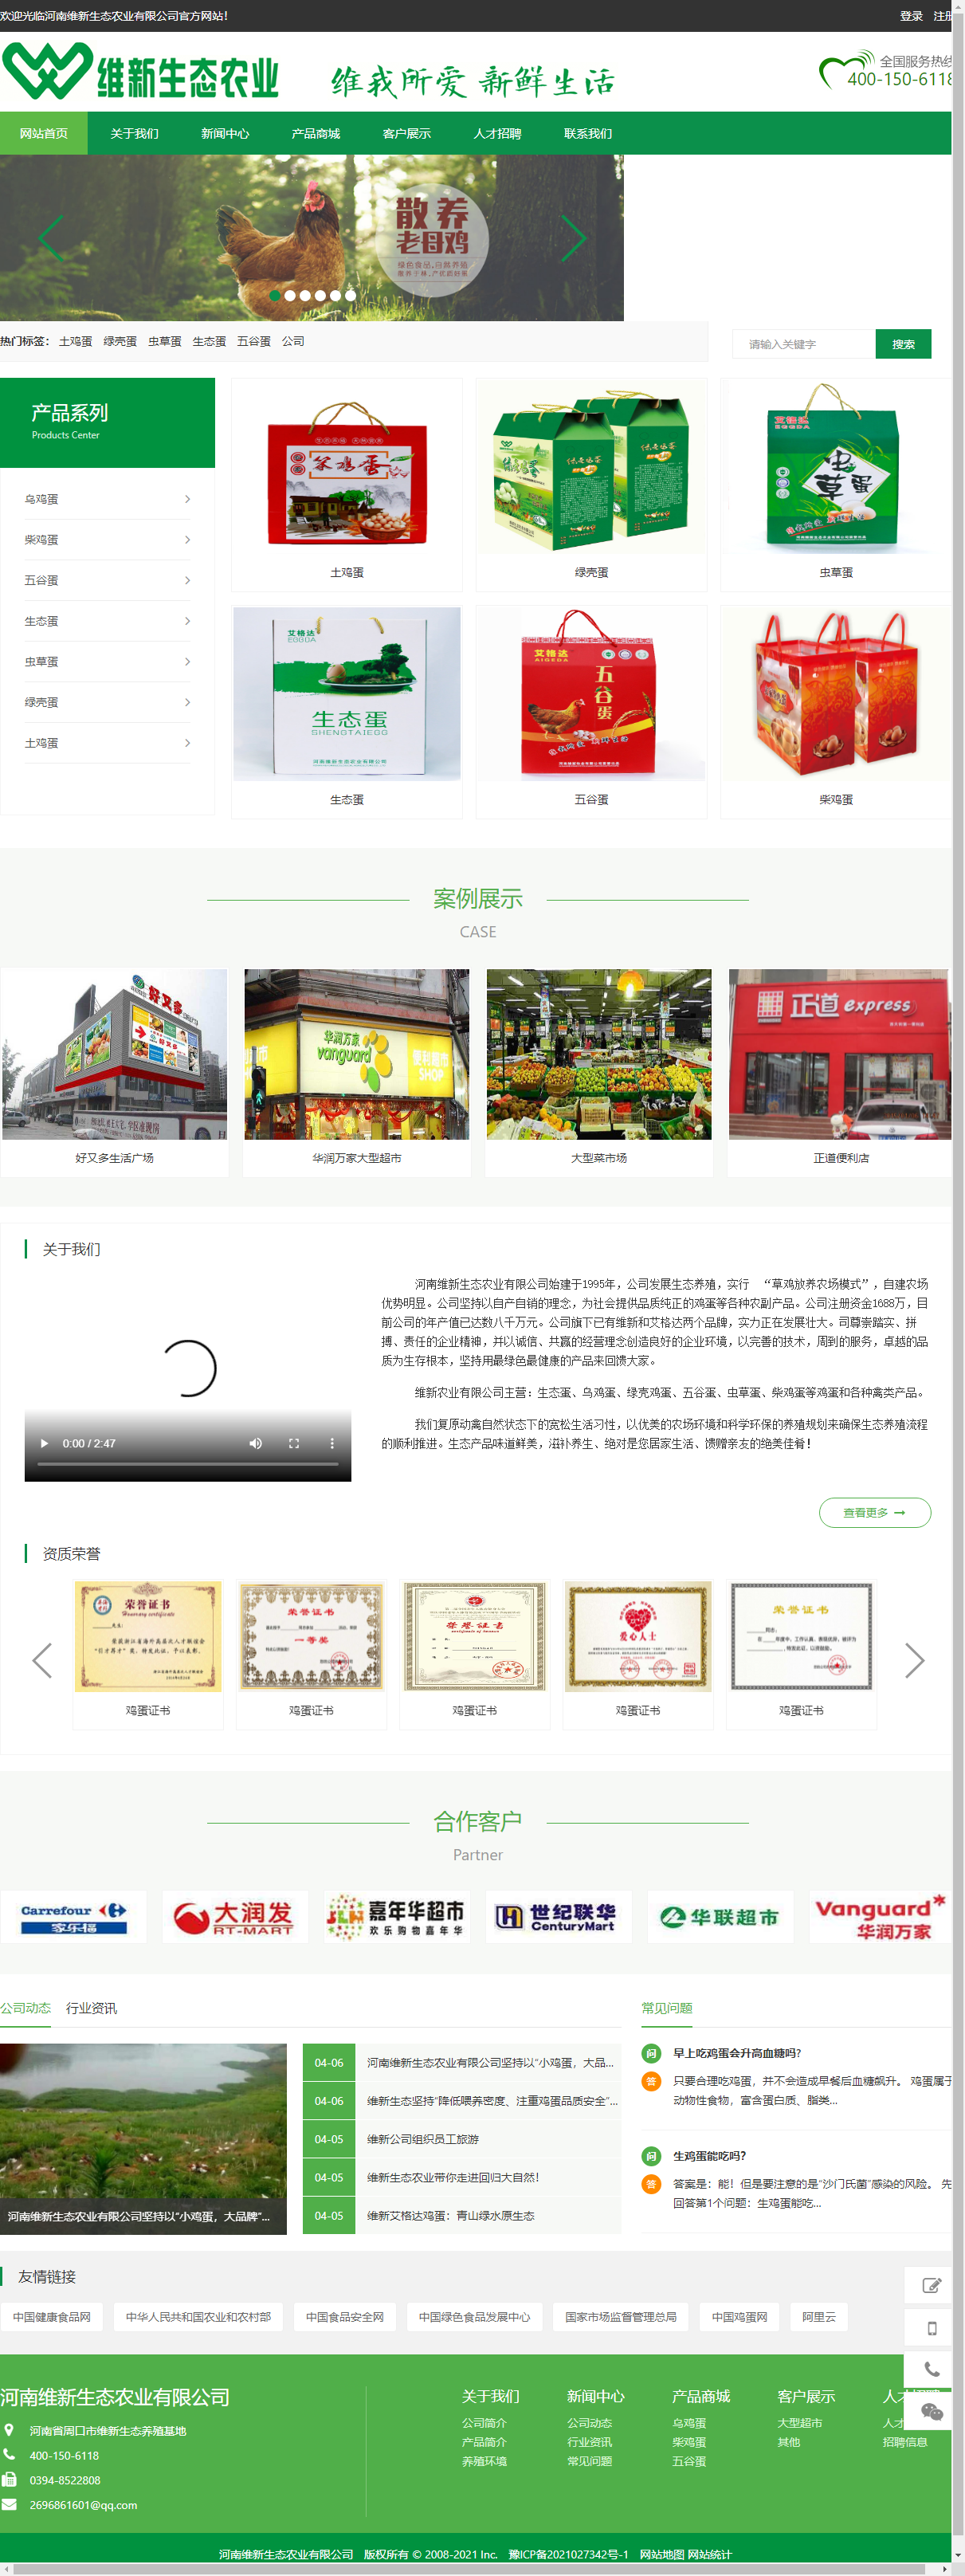 河南维新生态农业有限公司网站案例